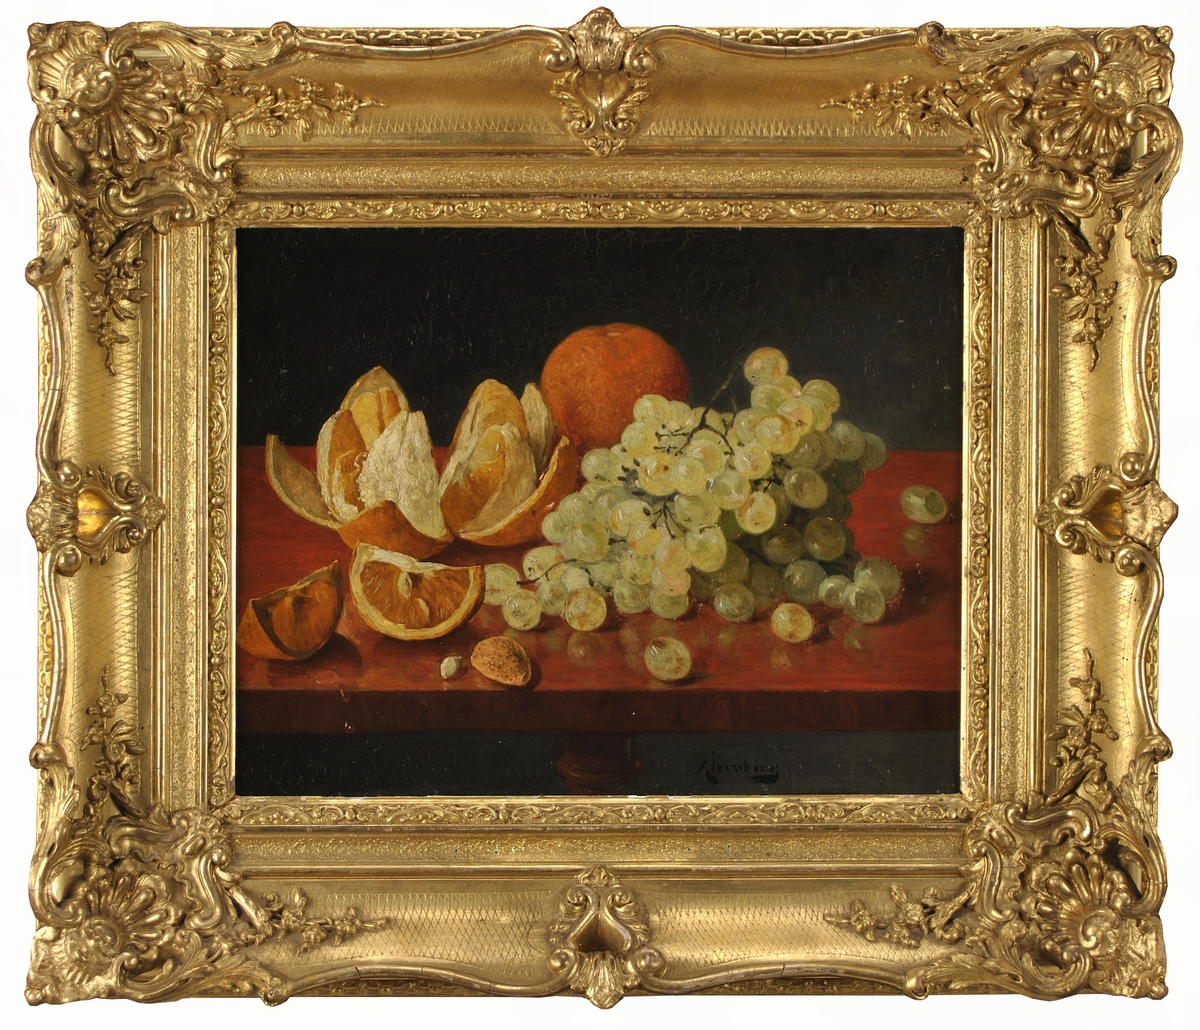 Stilleben med vindruvsklase, en hel apelsin och en apelsin skuren i klyftor samt en mandel oskalad, på ett rödbrunt bord, svart bakgrund.